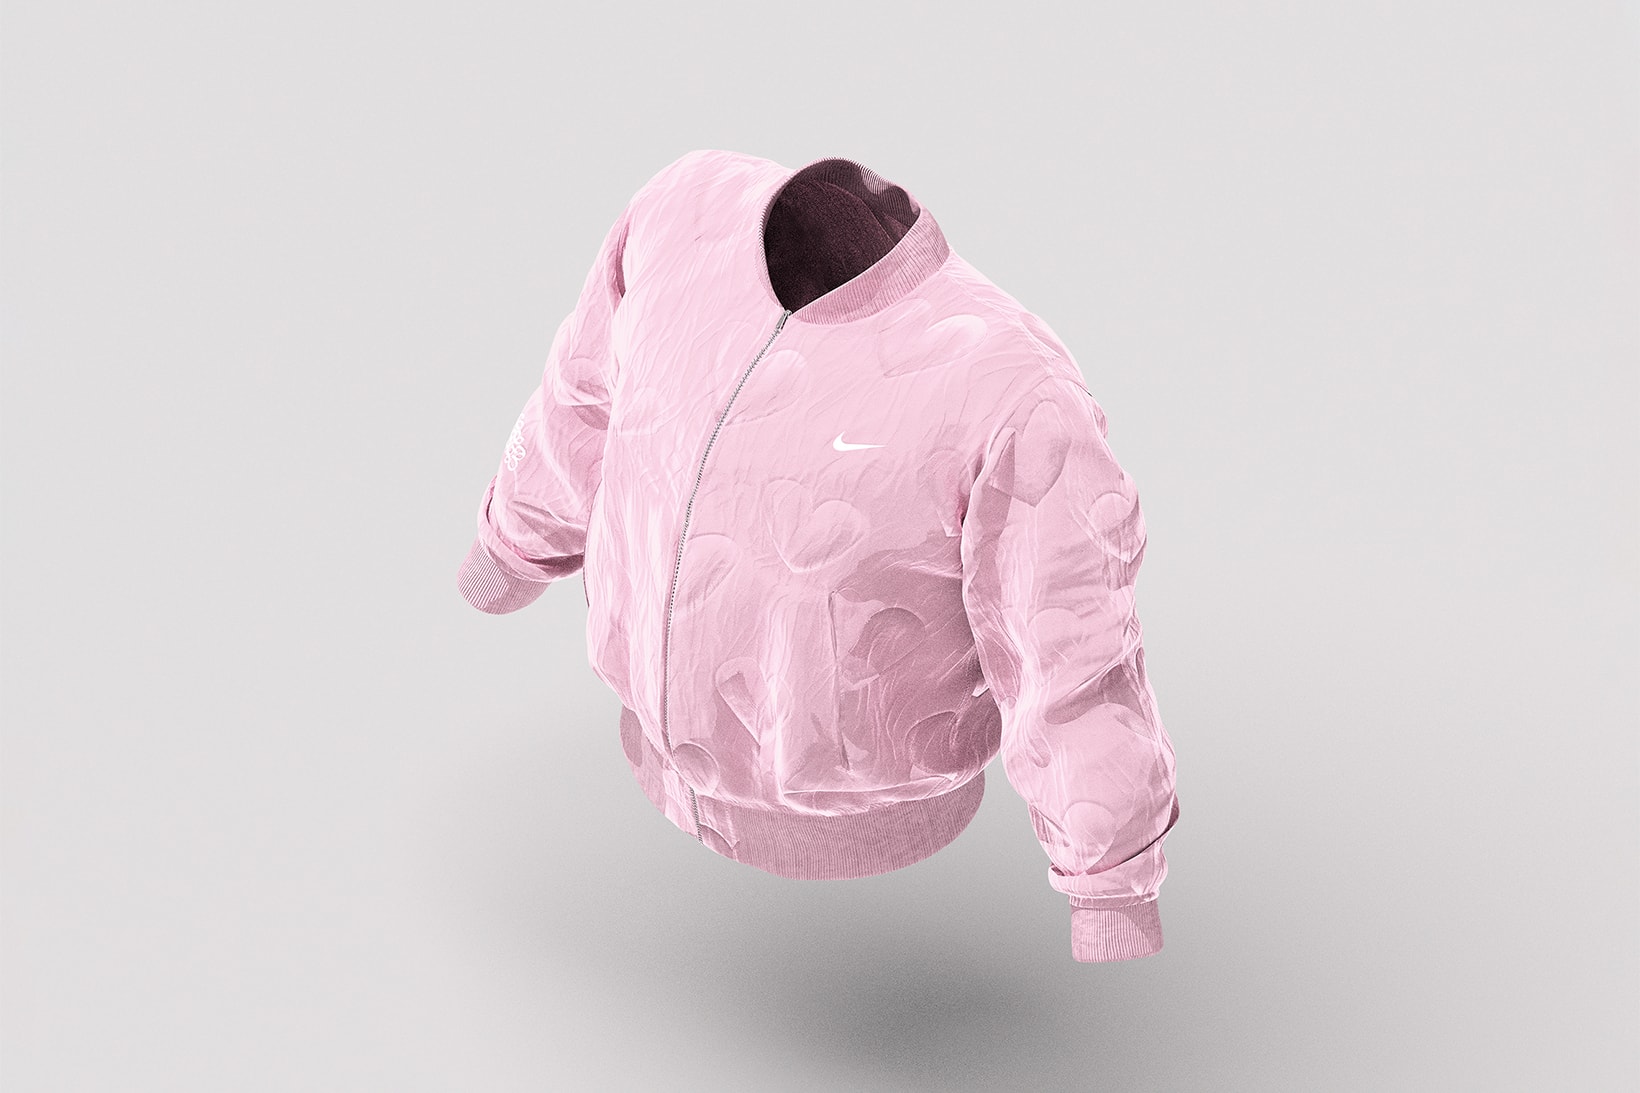 drake certified lover boy album merch pink jacket white cap nike